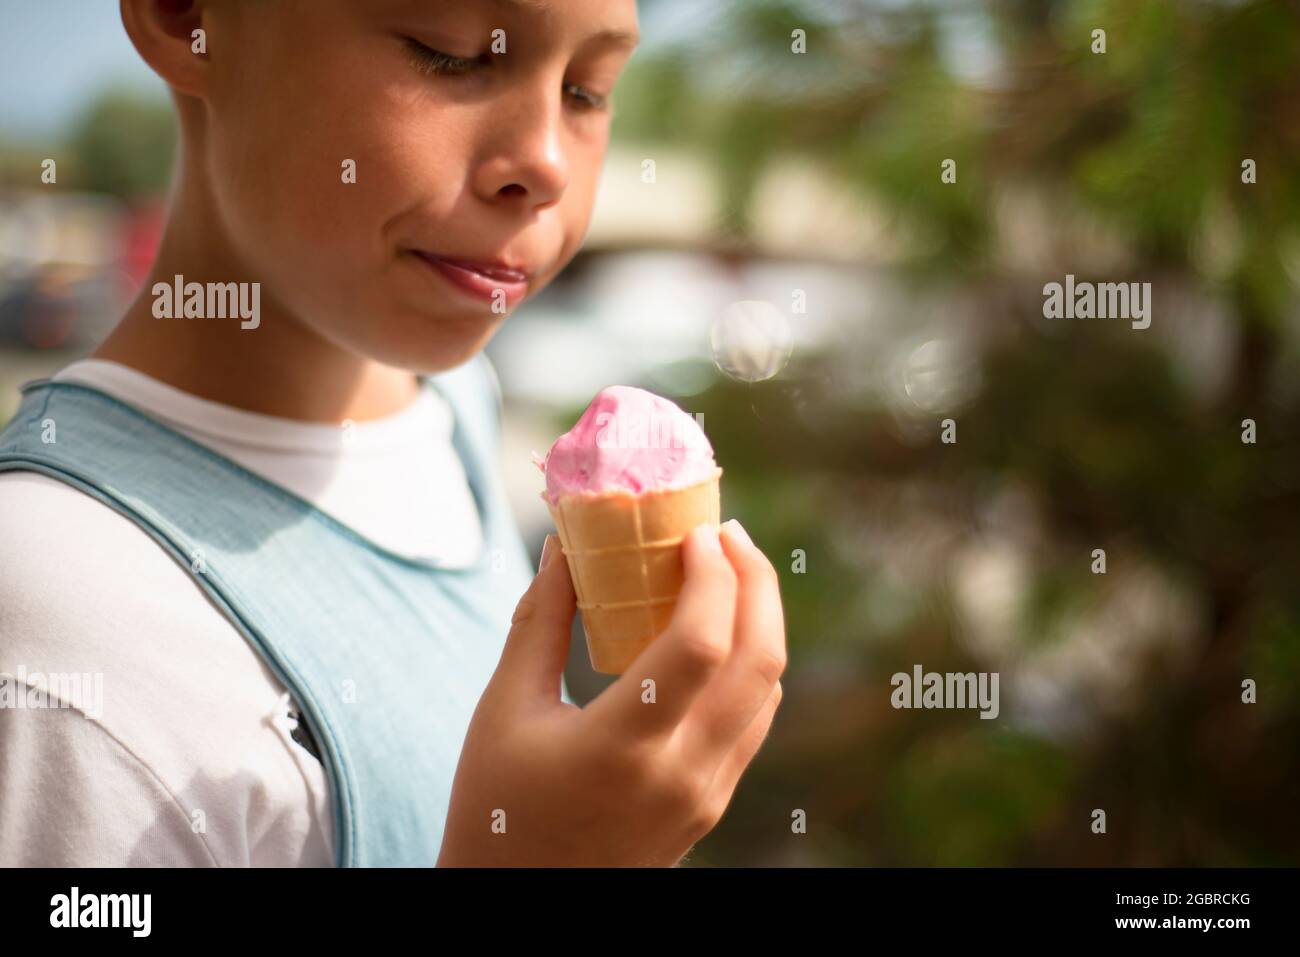 Le garçon tient une glace rose dans sa main. Plaisir. Émotions positives. Banque D'Images